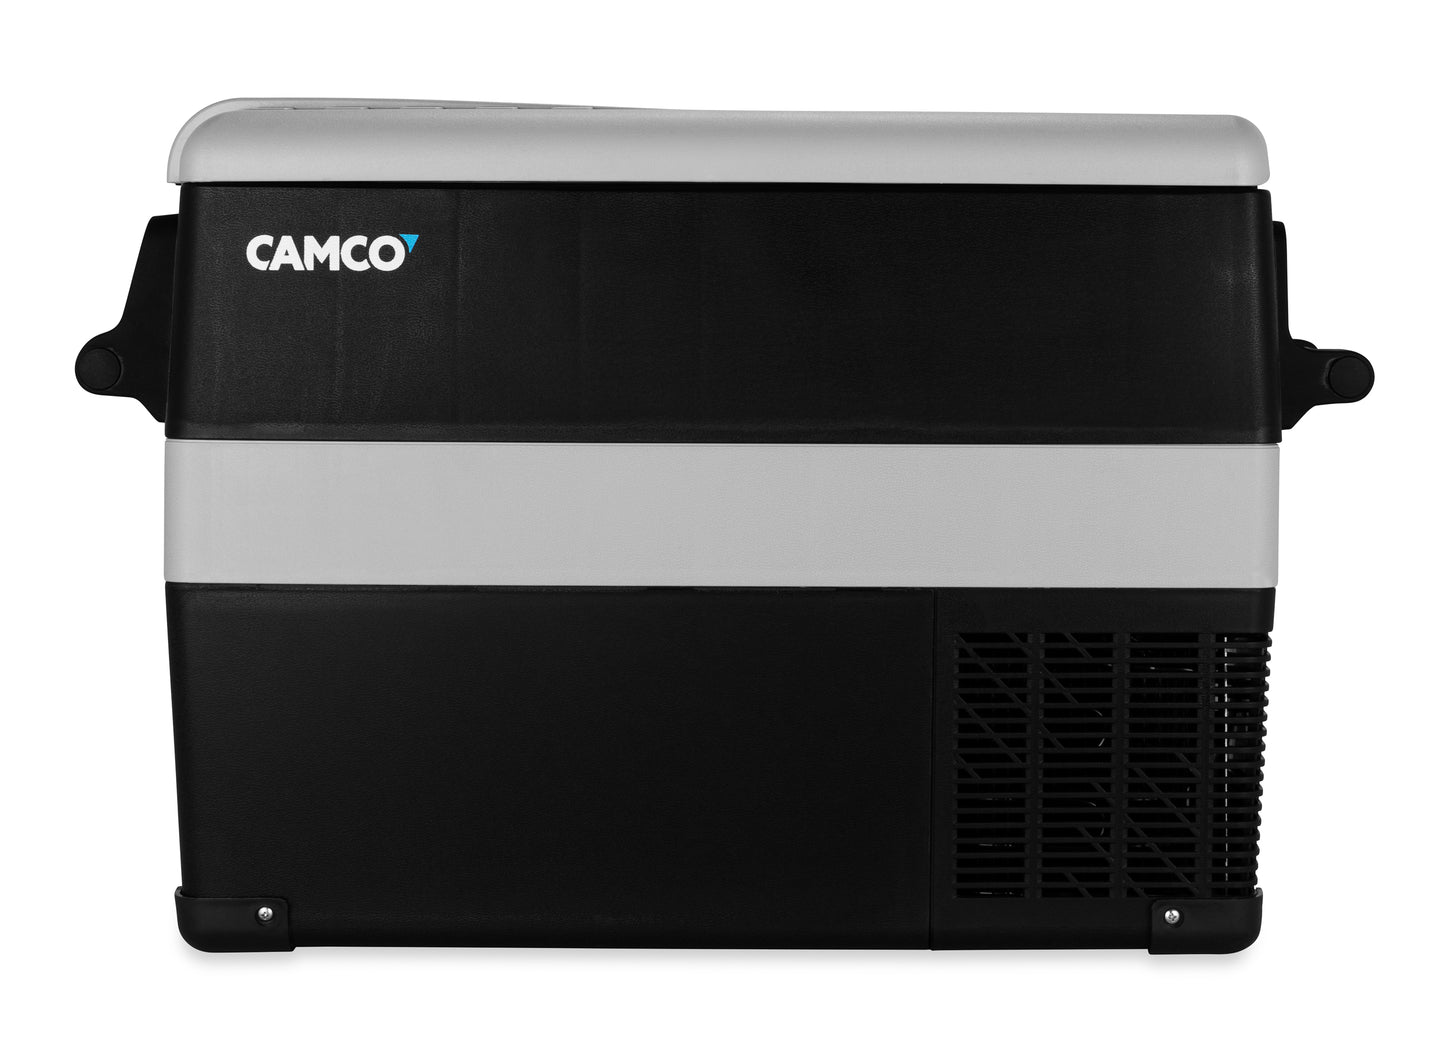 Camco Outdoors CAM-450 Portable Refrigerator - 45 Liter